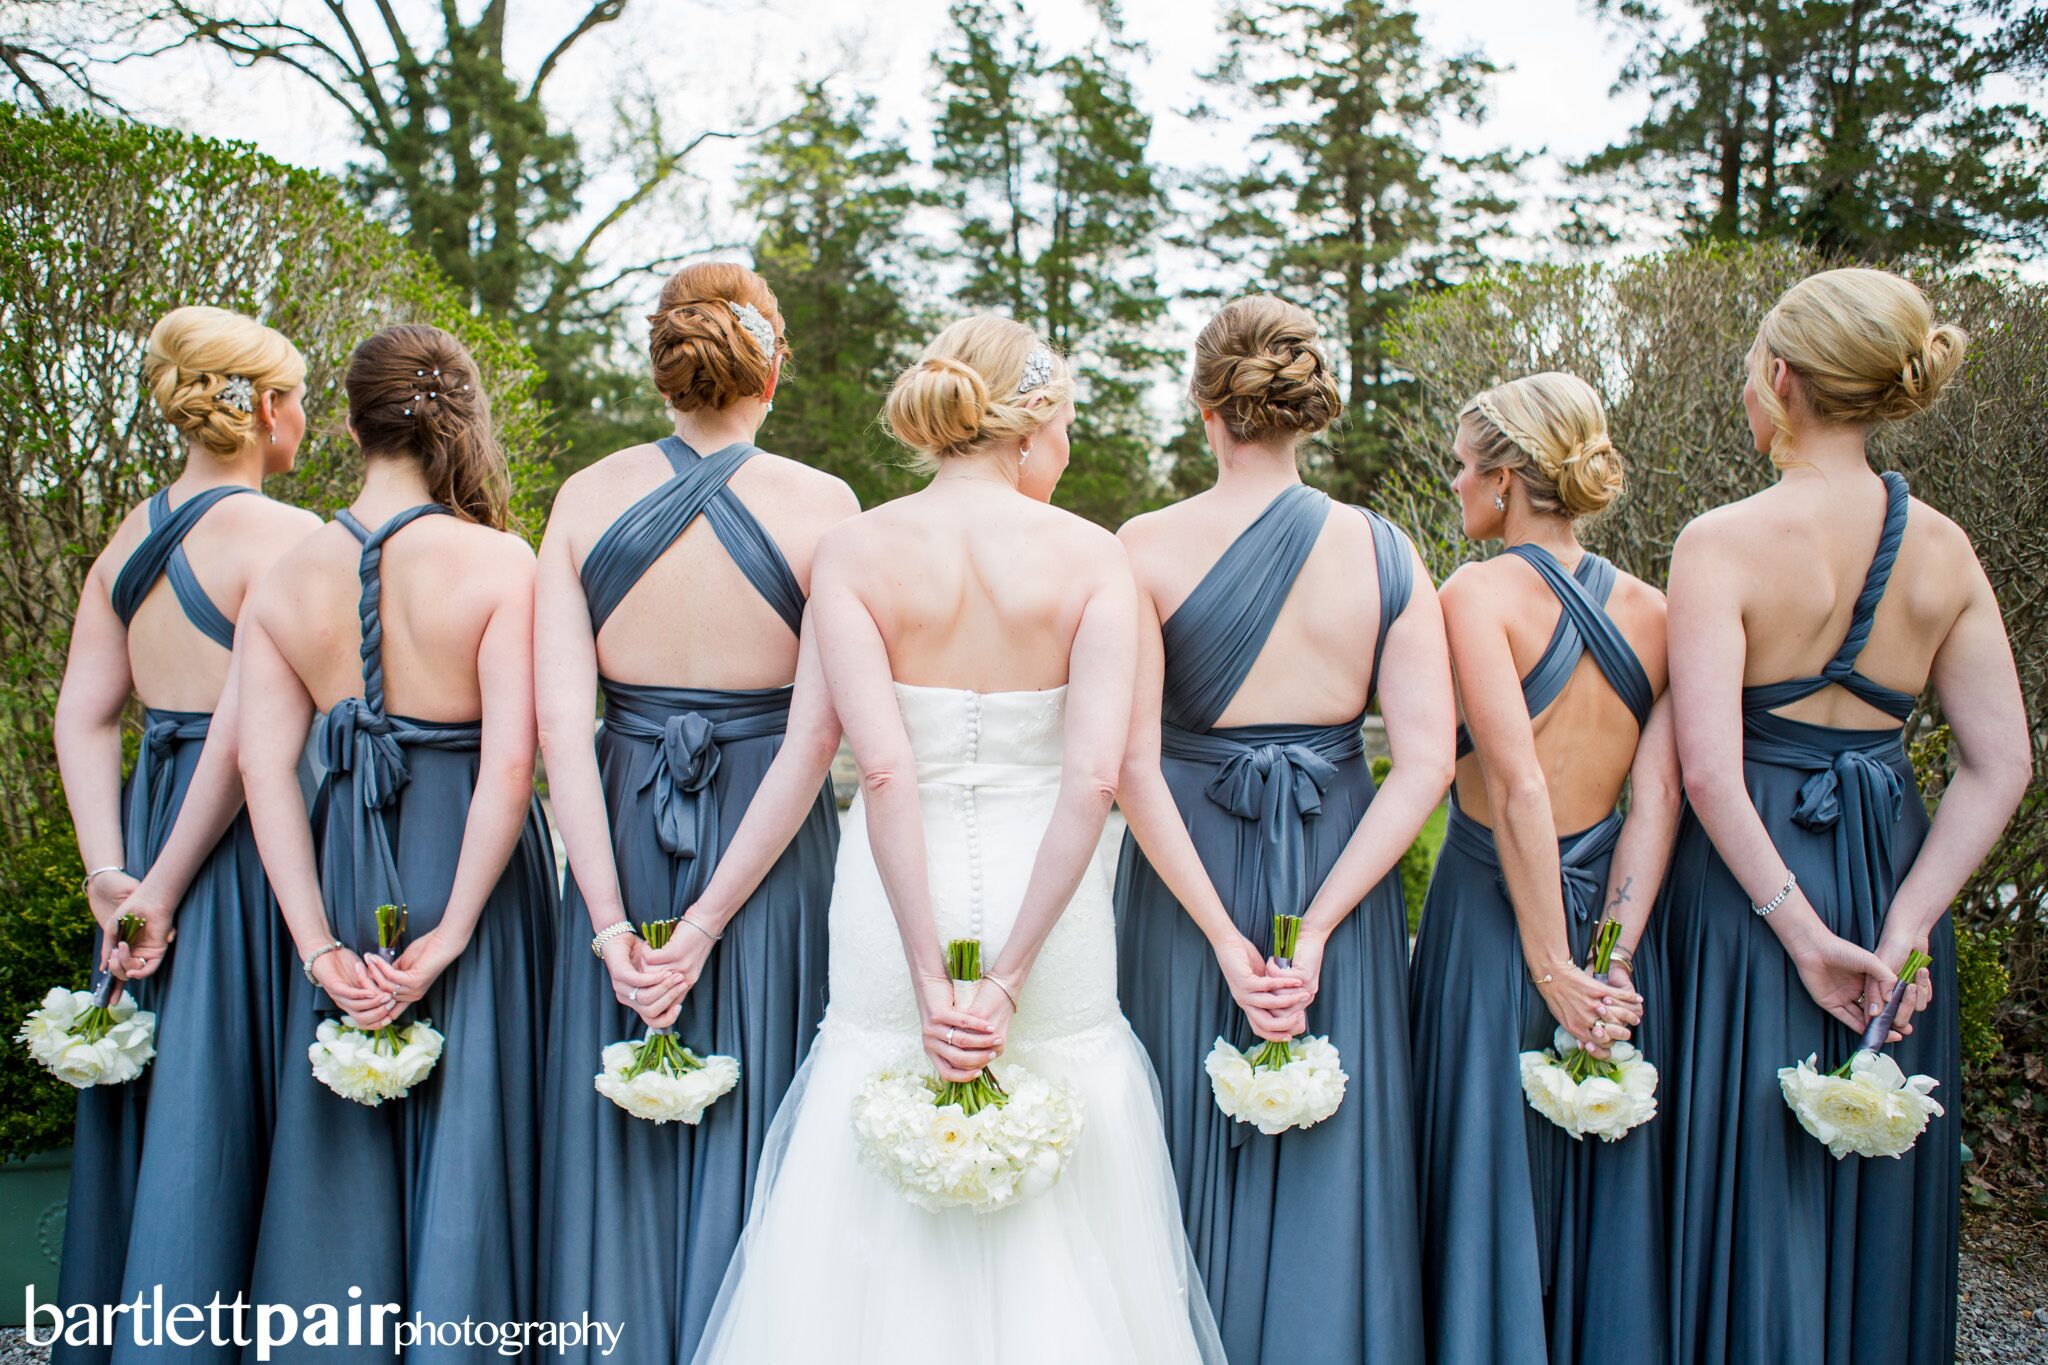 steel blue bridesmaid dresses